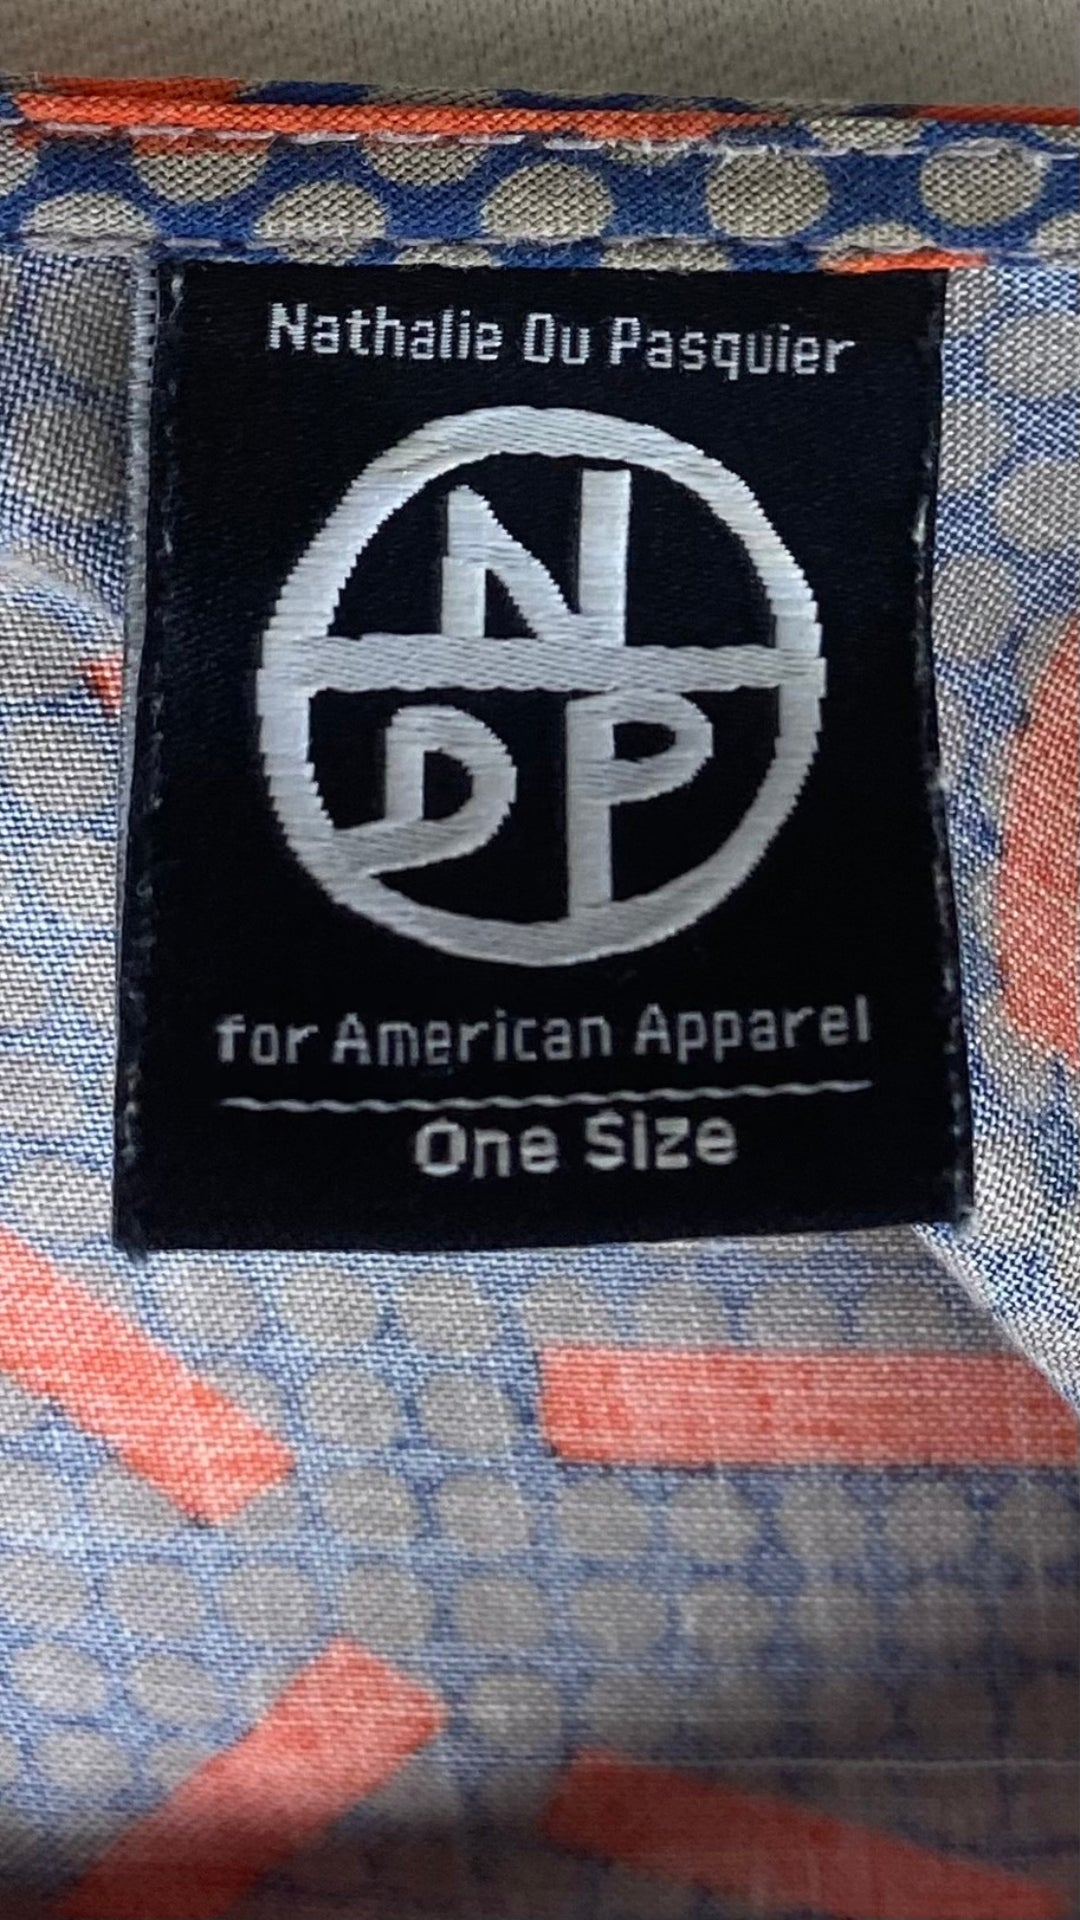 Robe trapèze à motifs Nathalie Du Pasquier pour American Apparel, taille one size. Vue de l'étiquette de marque et taille.